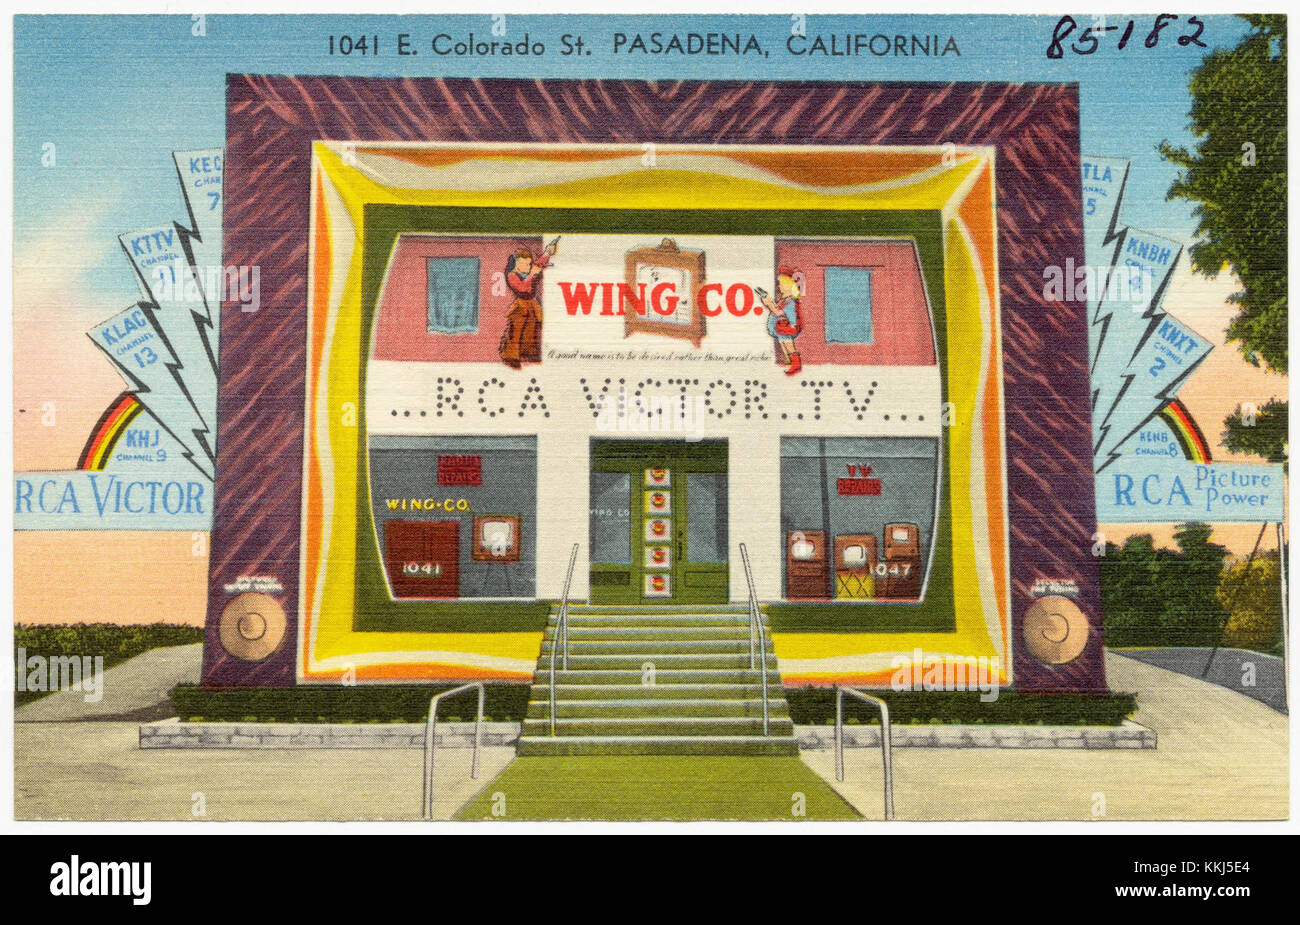 Wing Co. ...RCA Victor..TV..., 1041 E. Colorado St., Pasadena, California (85182) Stock Photo